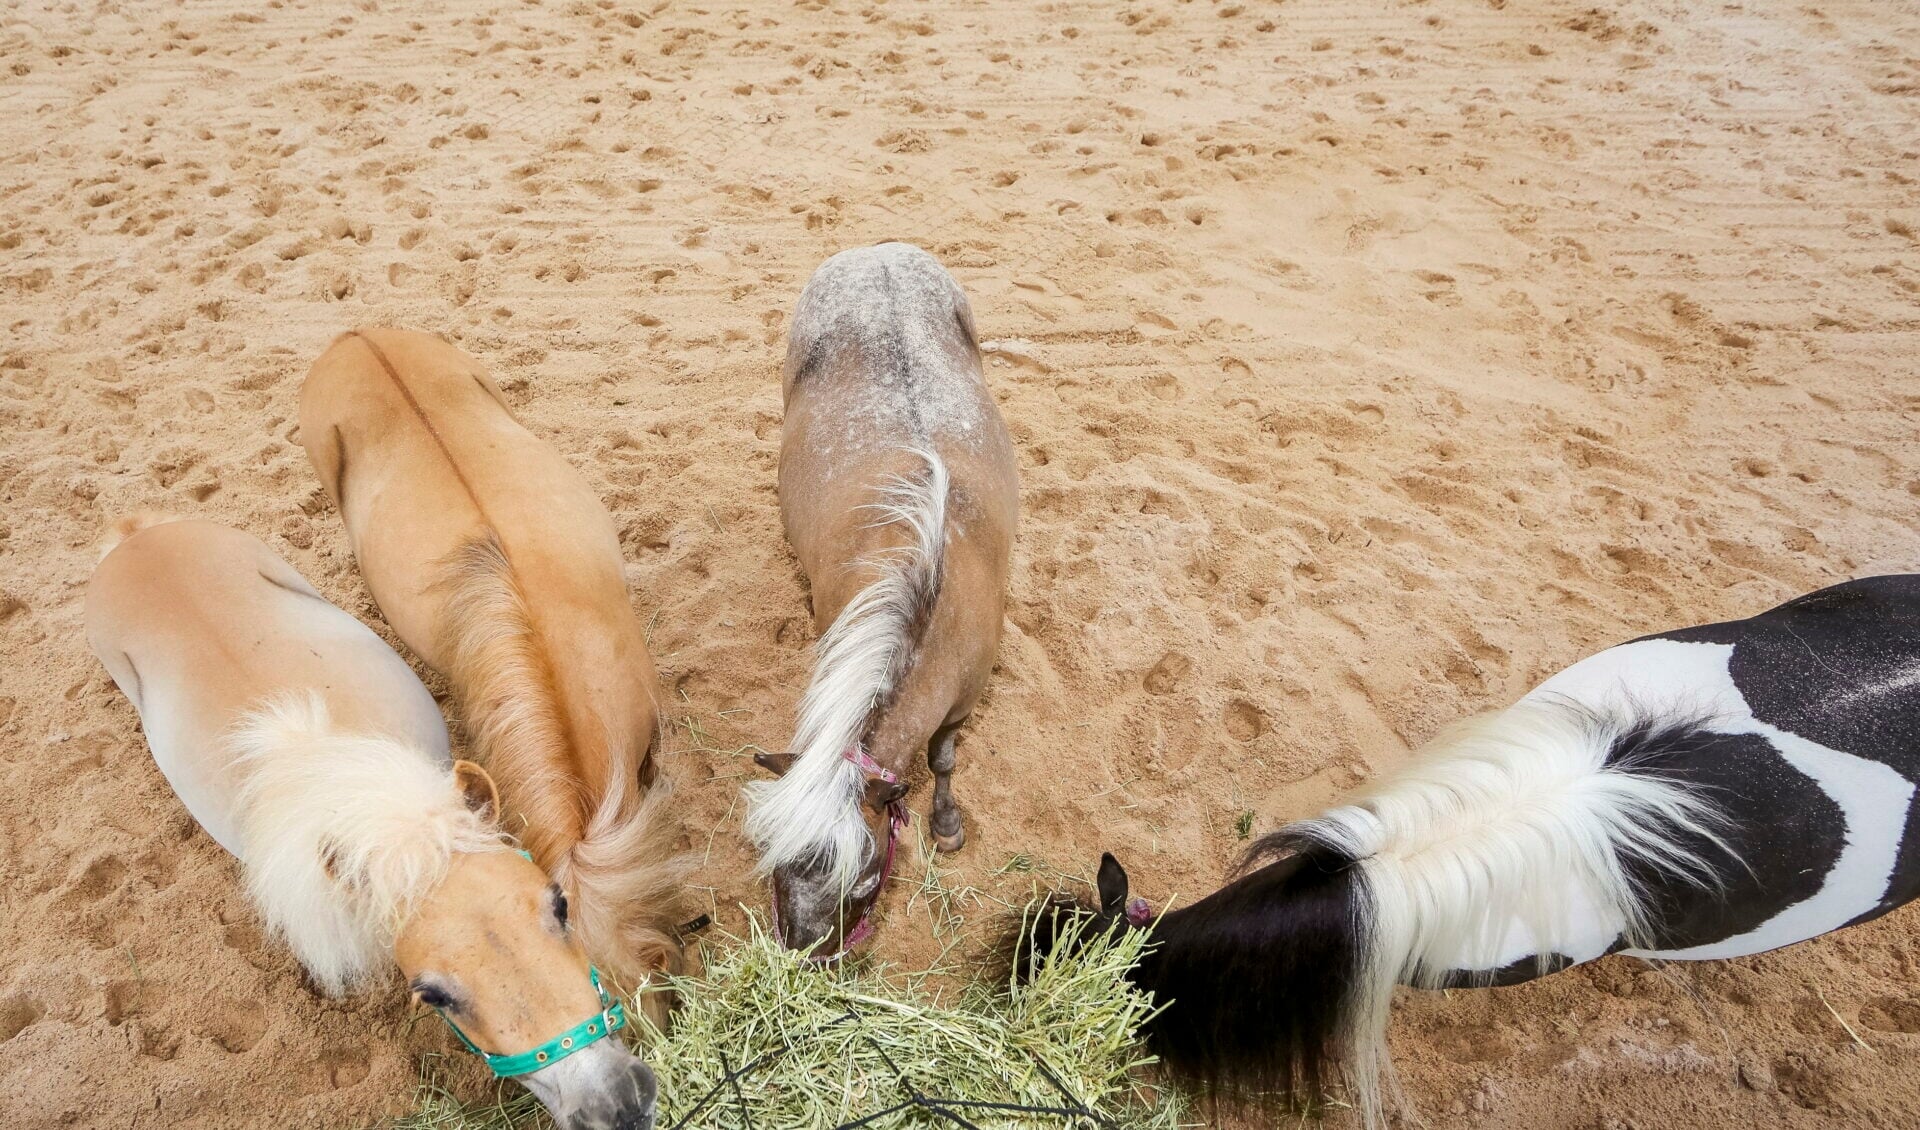 Doha, Ponies fressen Heu aus einem Heunetz